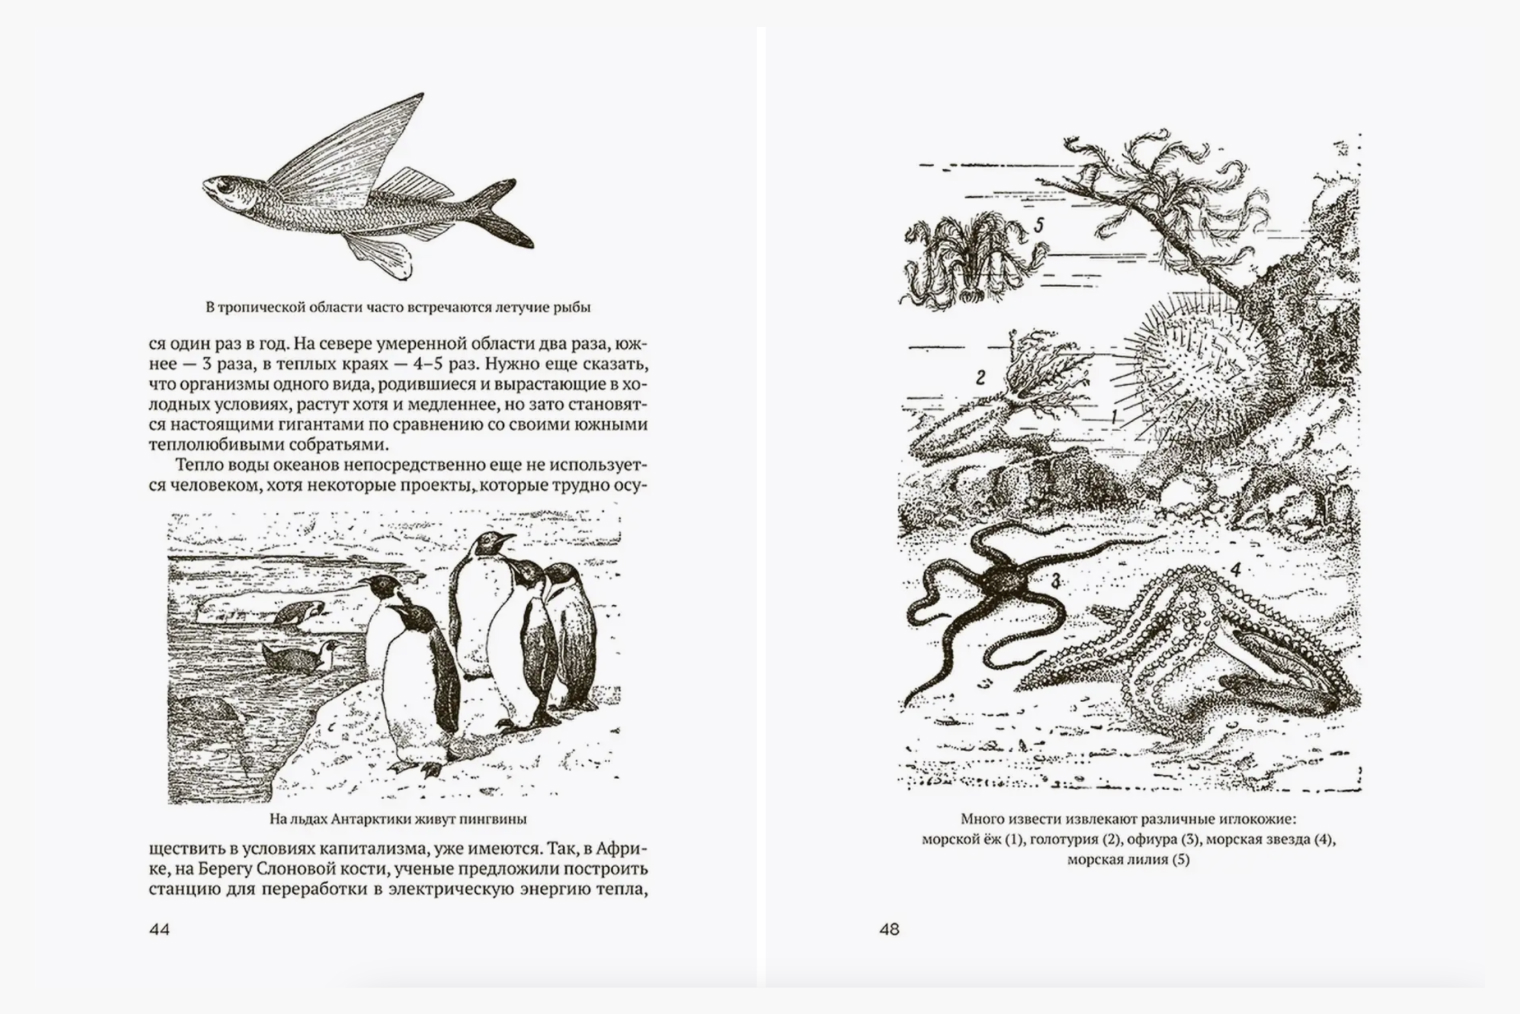 Книга «Океан» 1955 года из серии «Советское наследие» черно-белая, но от этого не менее интересная. Источник: wildberries.ru